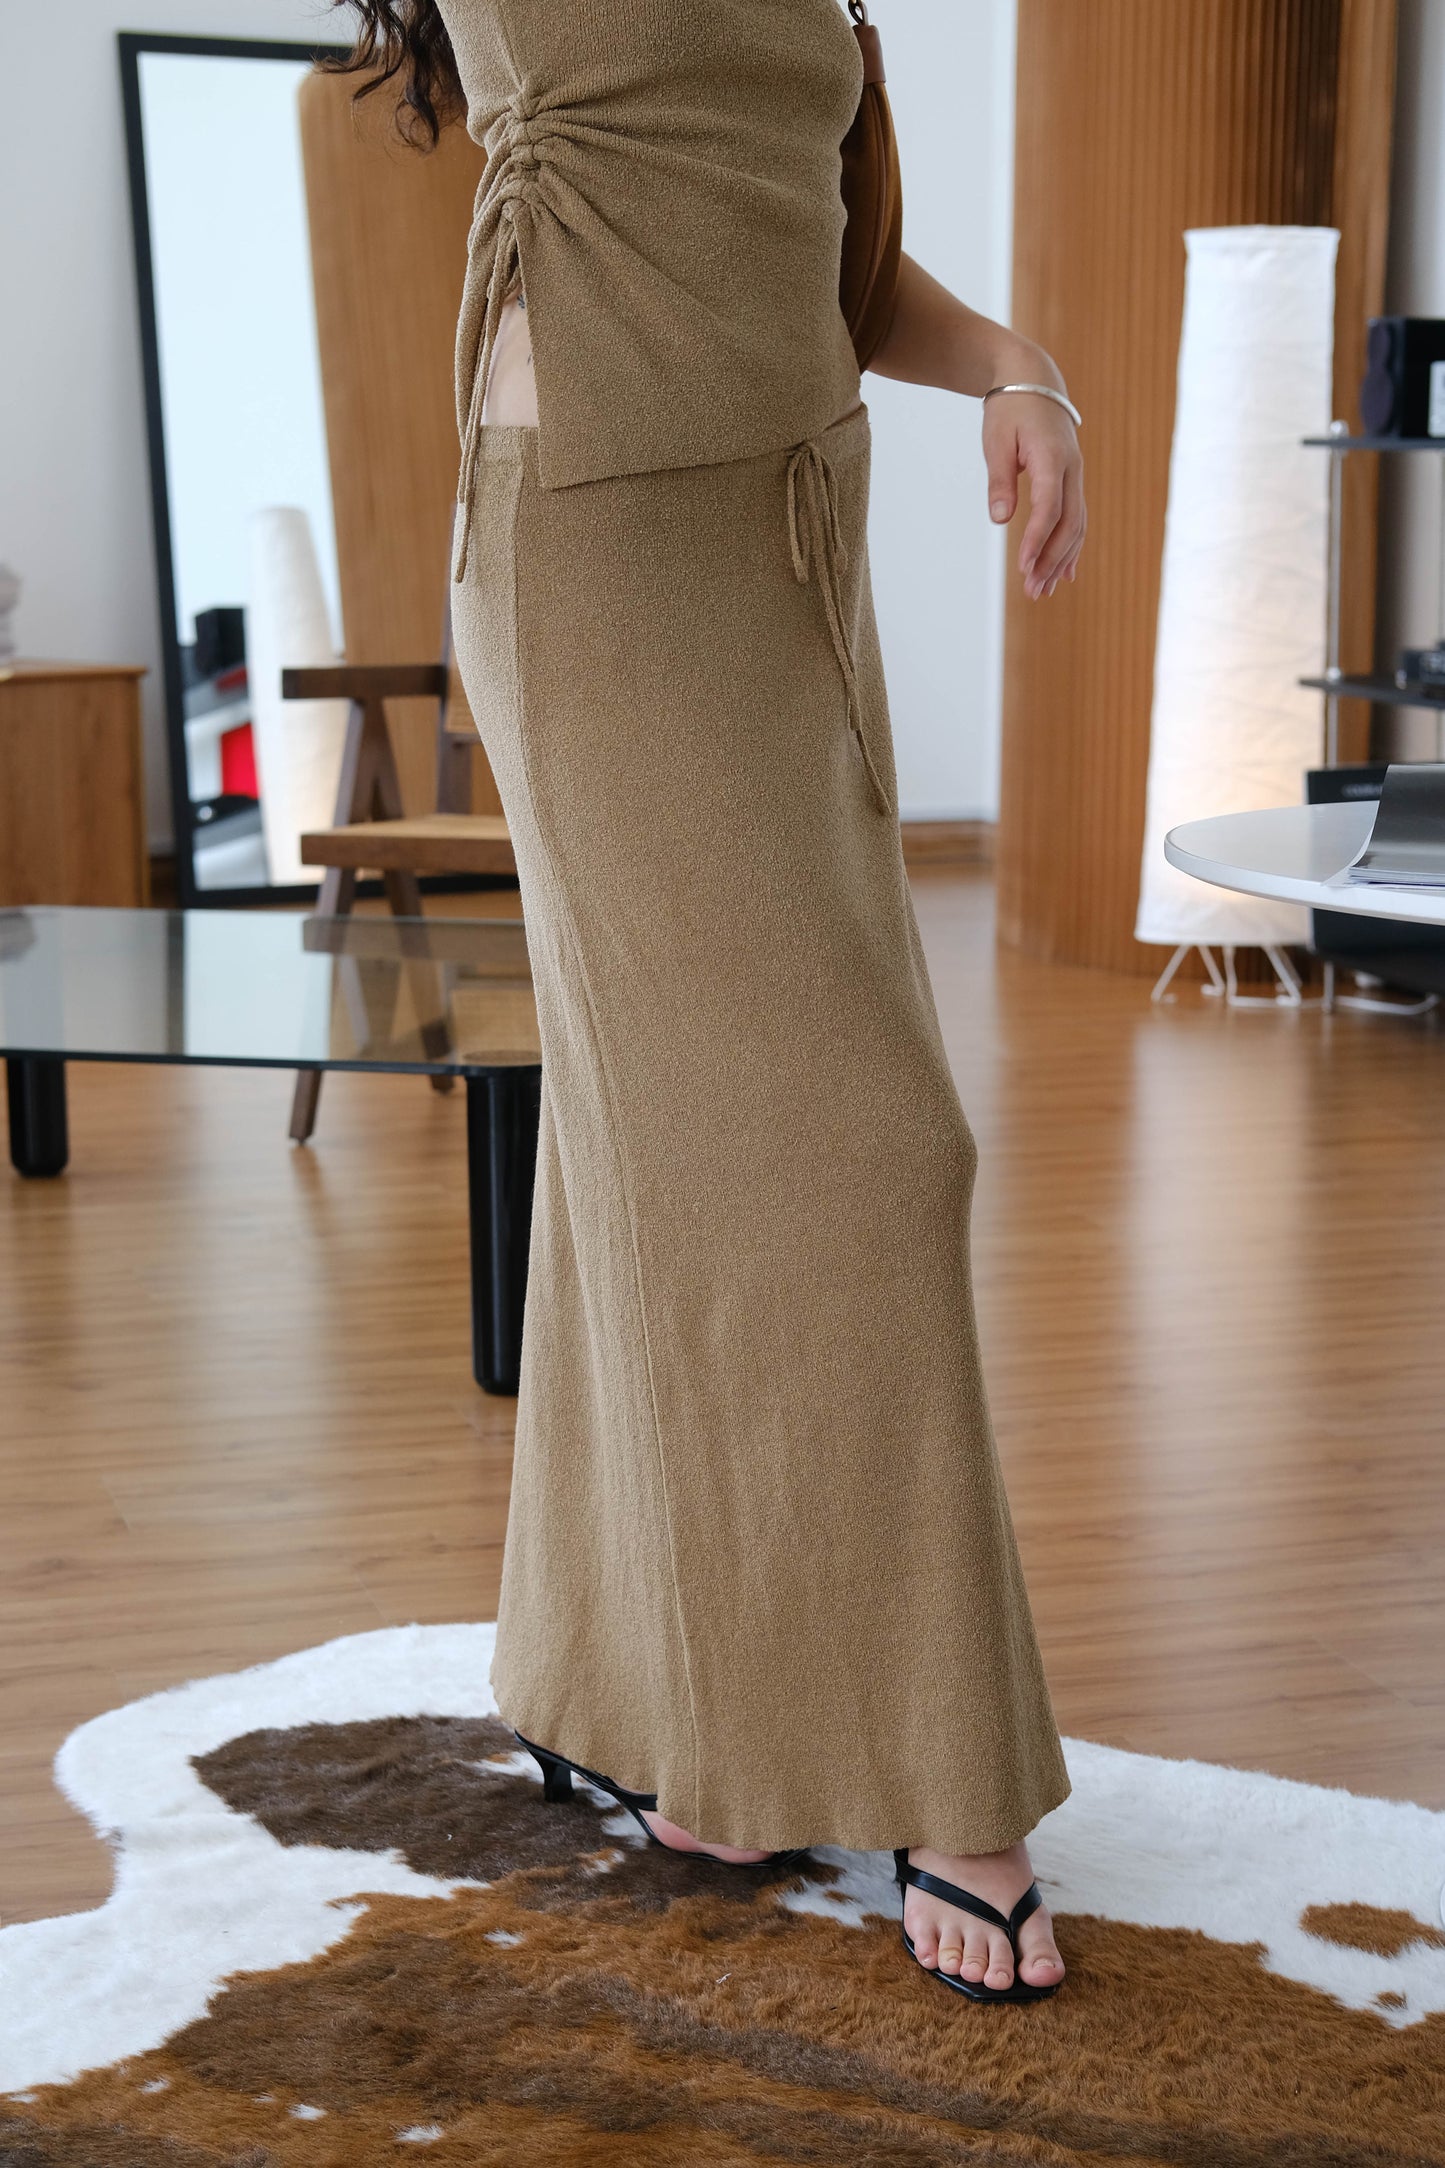 Woolen skirt in brown